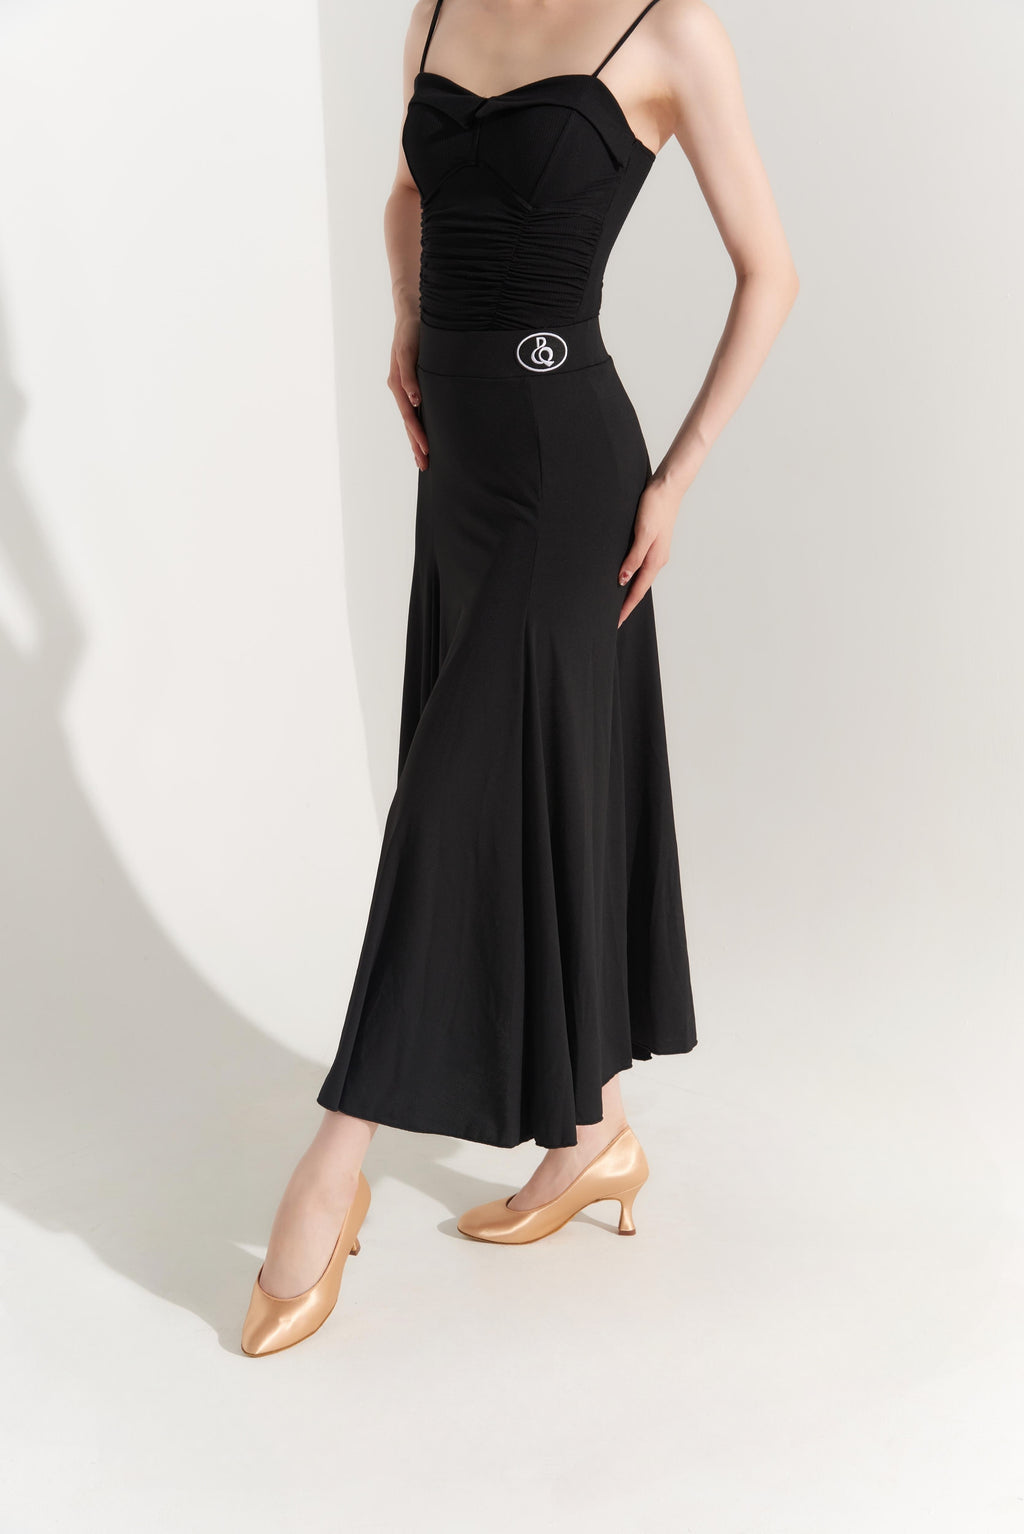 DQ-391 Dance Queen Black Godet Skirt